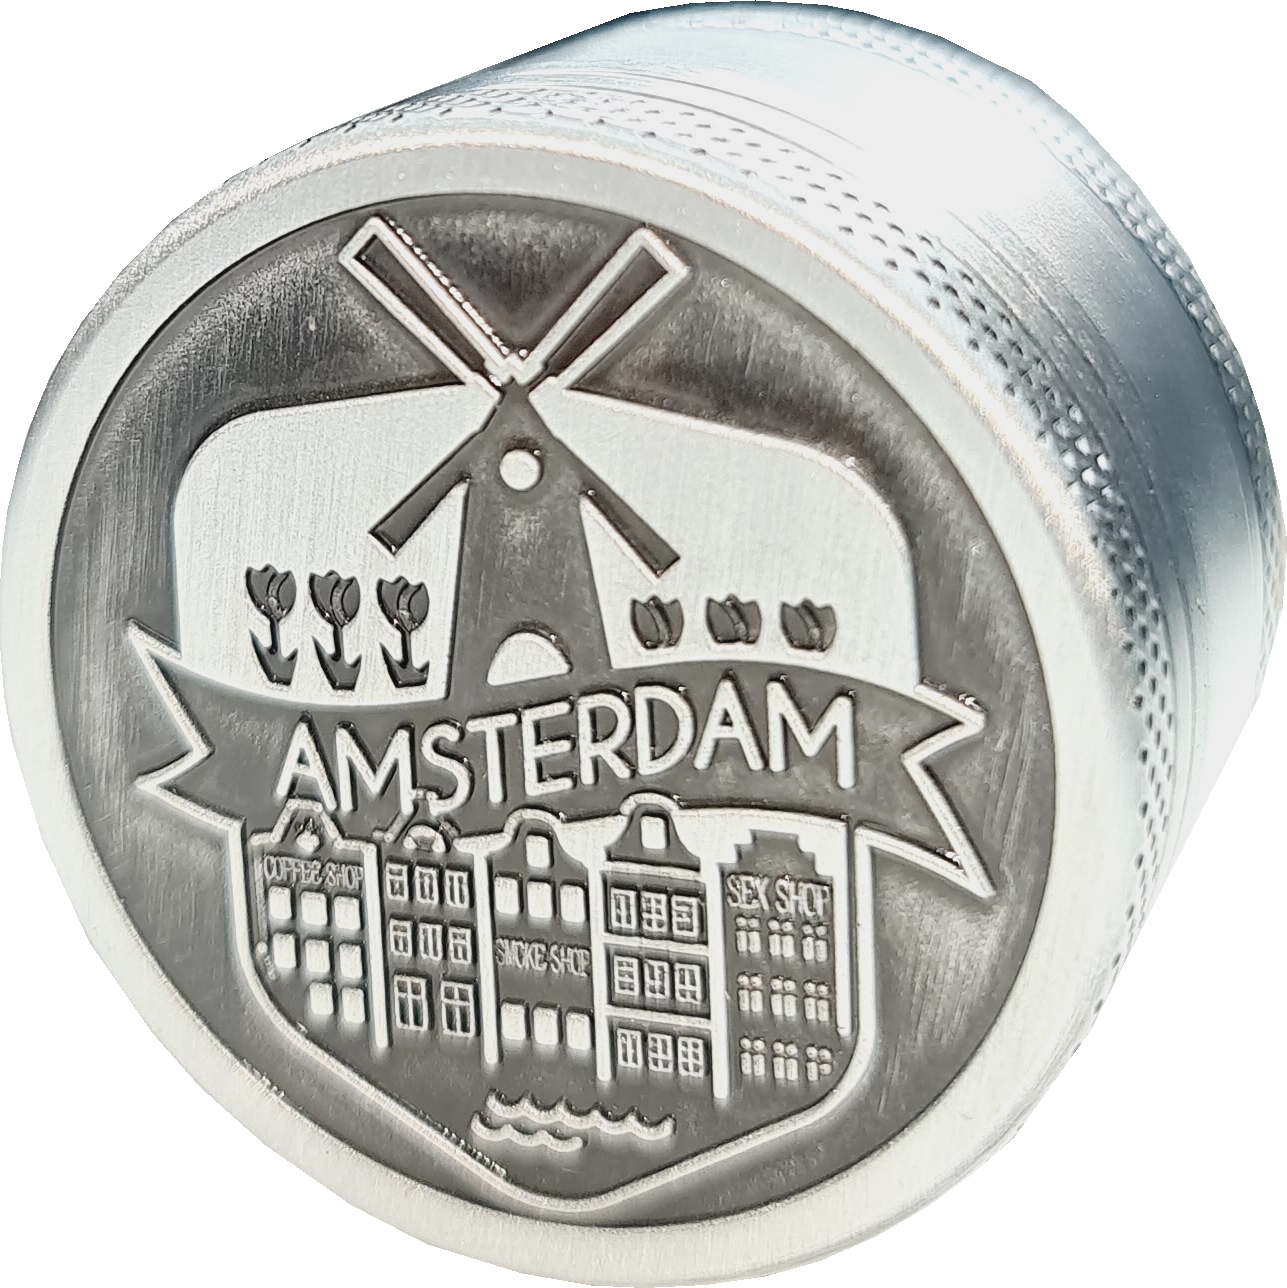 Grinder Metal Amsterdam Polinizador 40mm.